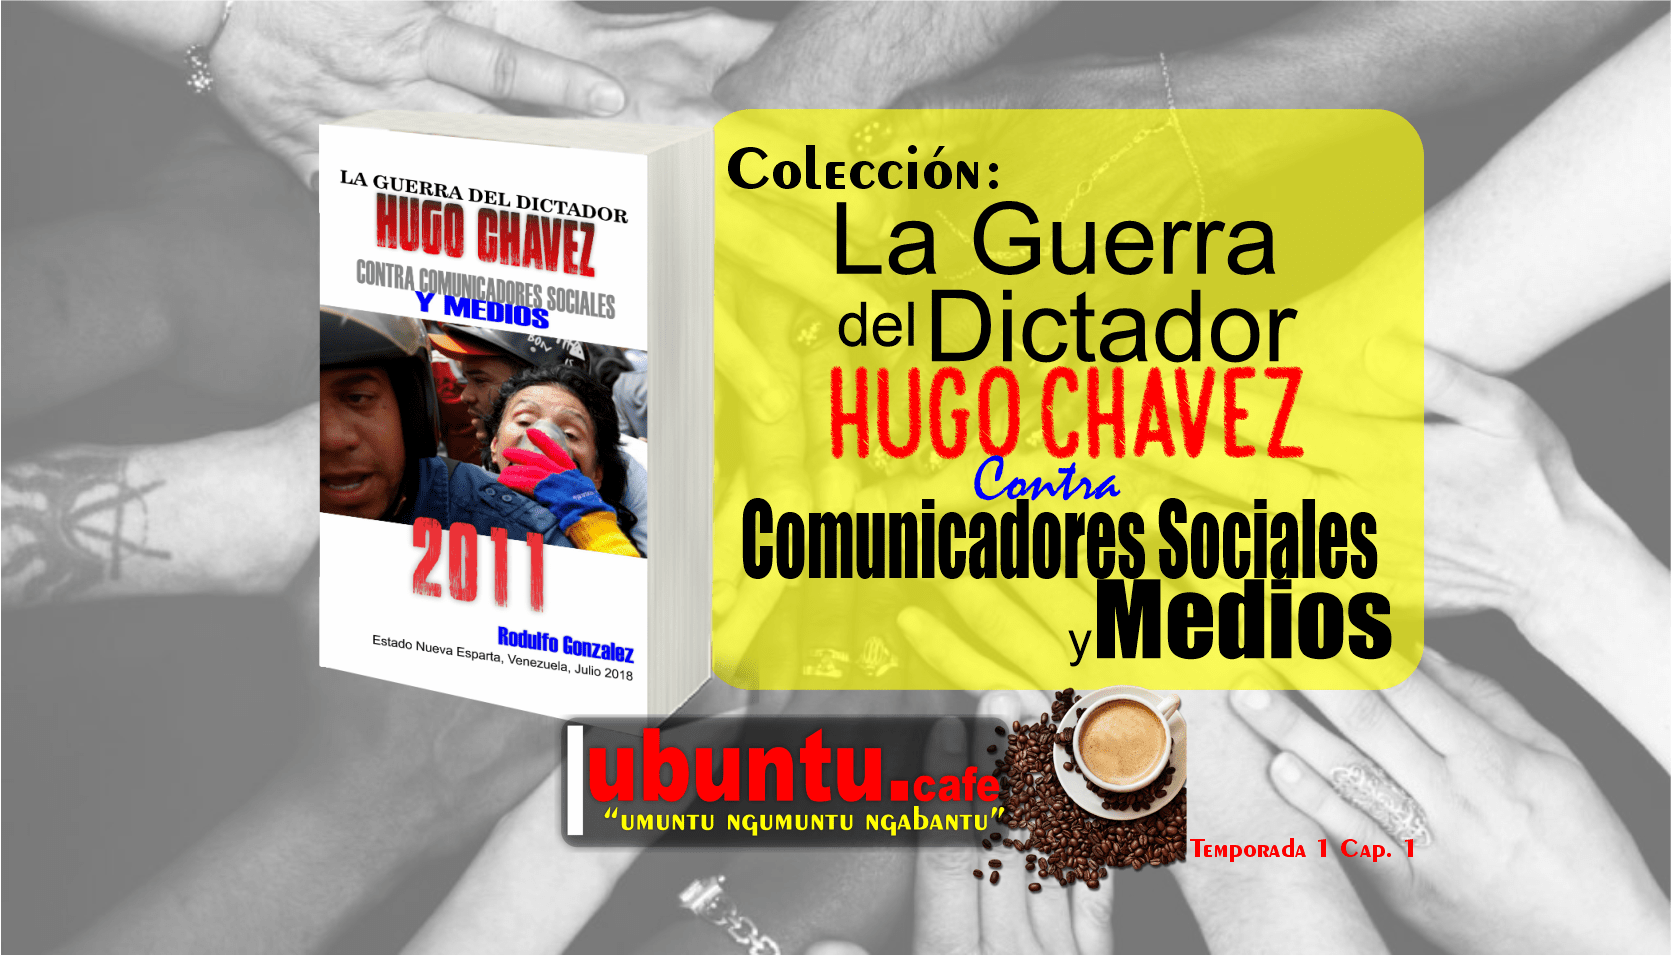 La Guerra del Dictador Hugo Chavez contra Comunicadores Sociales y Medios desde 2004 hasta 2012